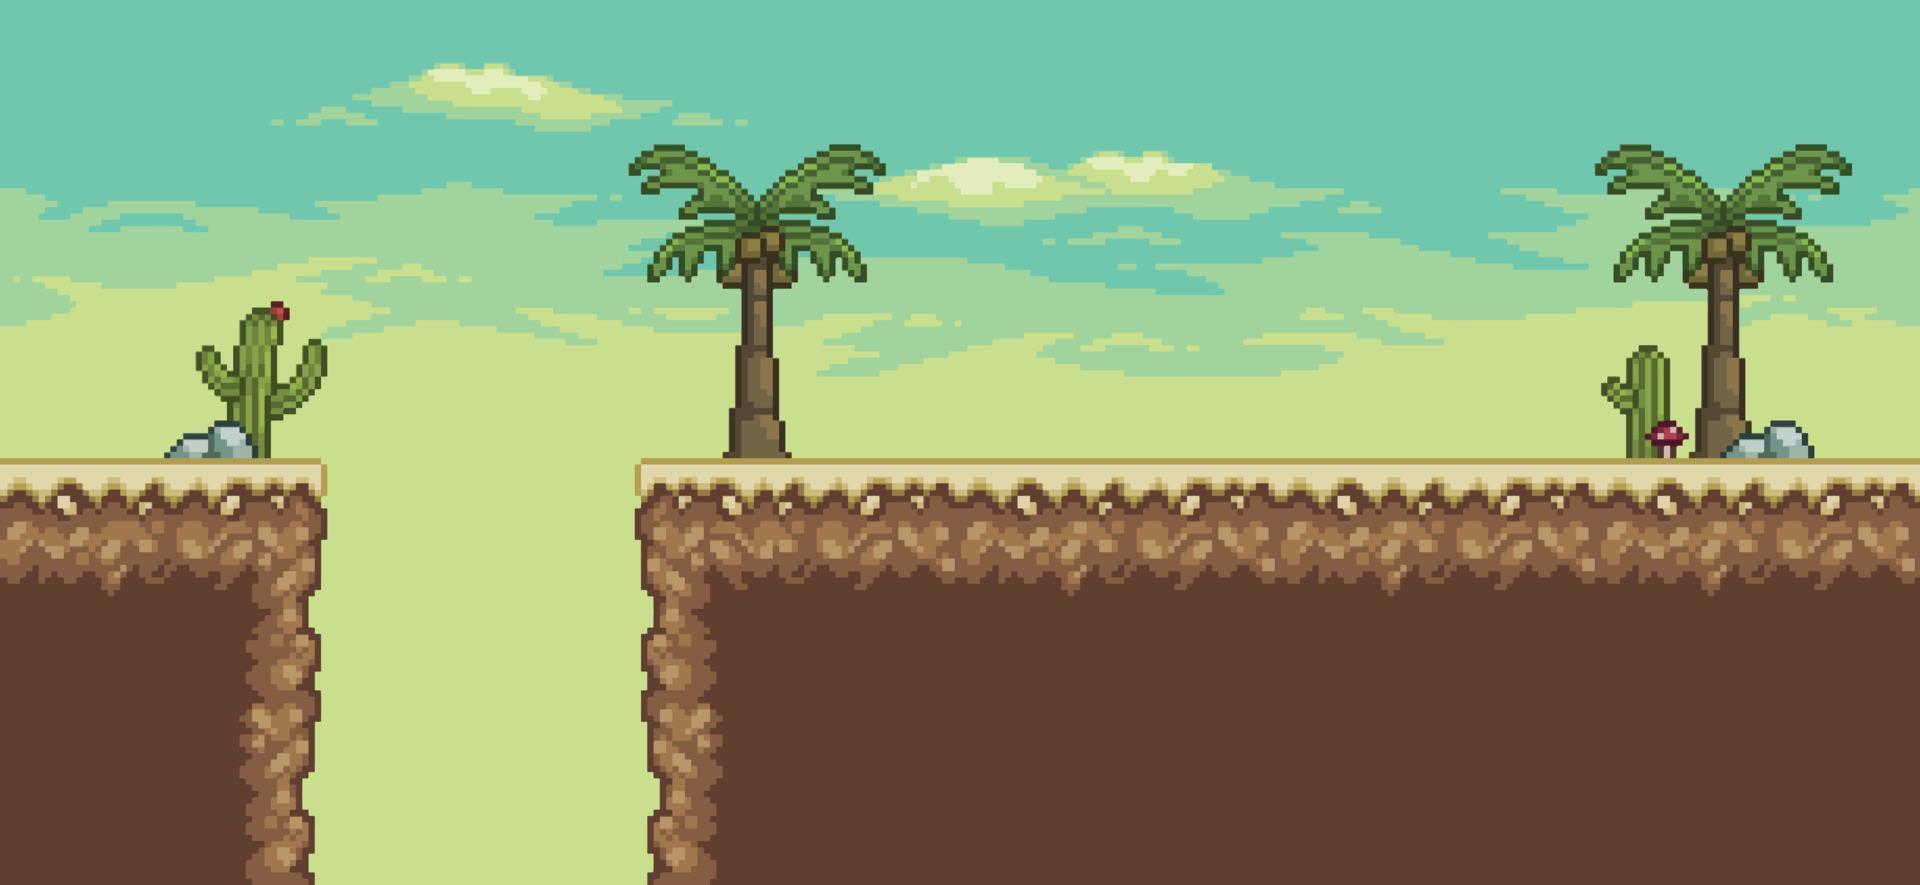 scena di gioco del deserto di pixel art con palma, cactus, vettore di sfondo a 8 bit